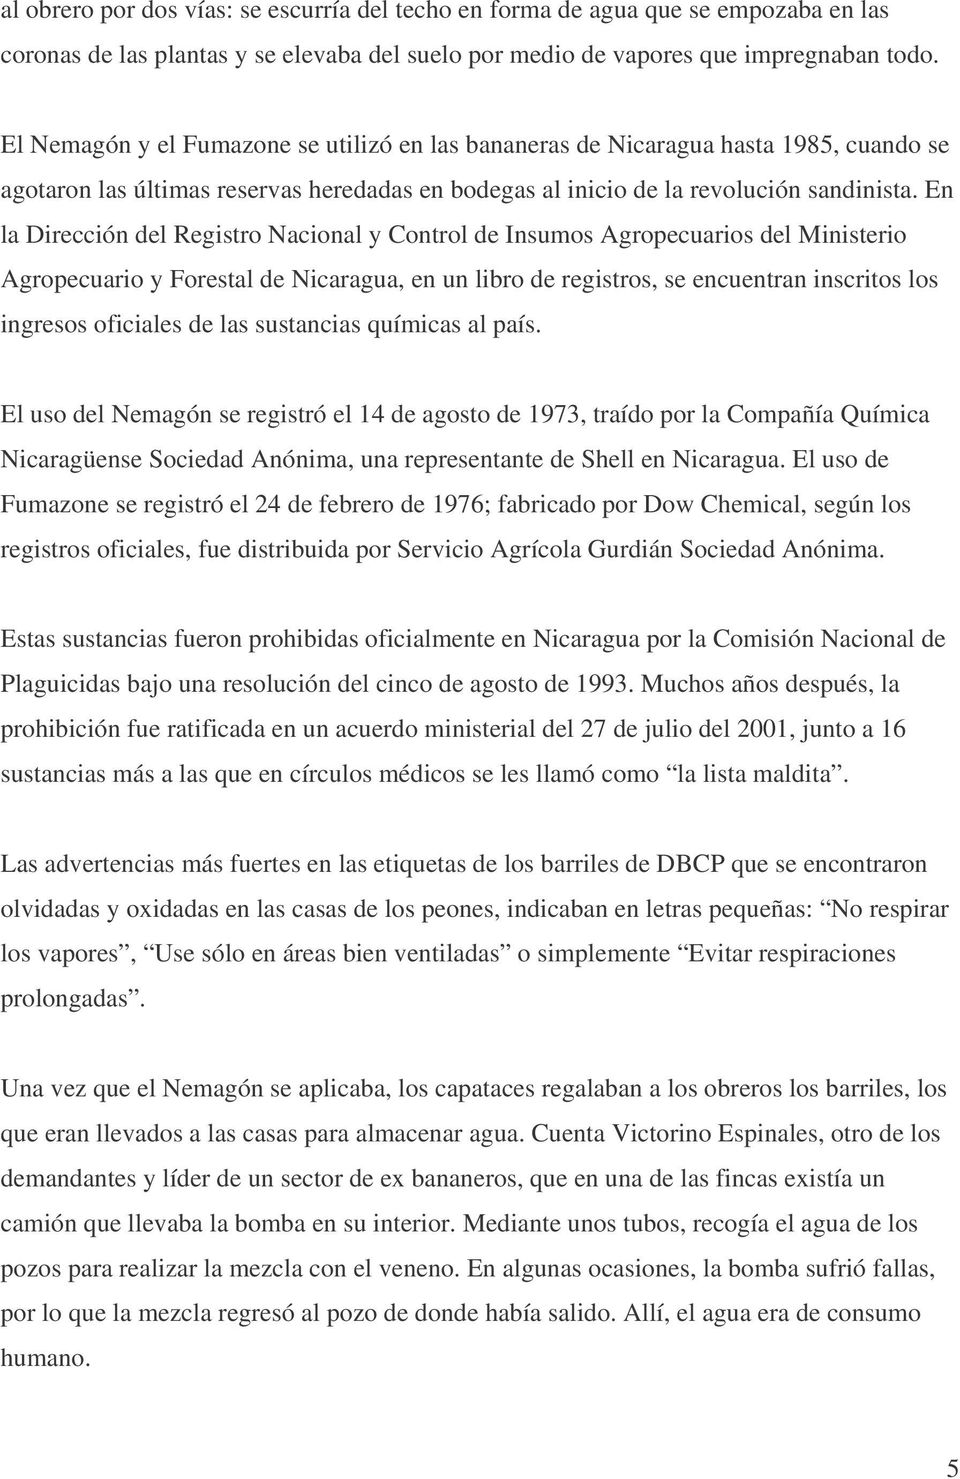 En la Dirección del Registro Nacional y Control de Insumos Agropecuarios del Ministerio Agropecuario y Forestal de Nicaragua, en un libro de registros, se encuentran inscritos los ingresos oficiales